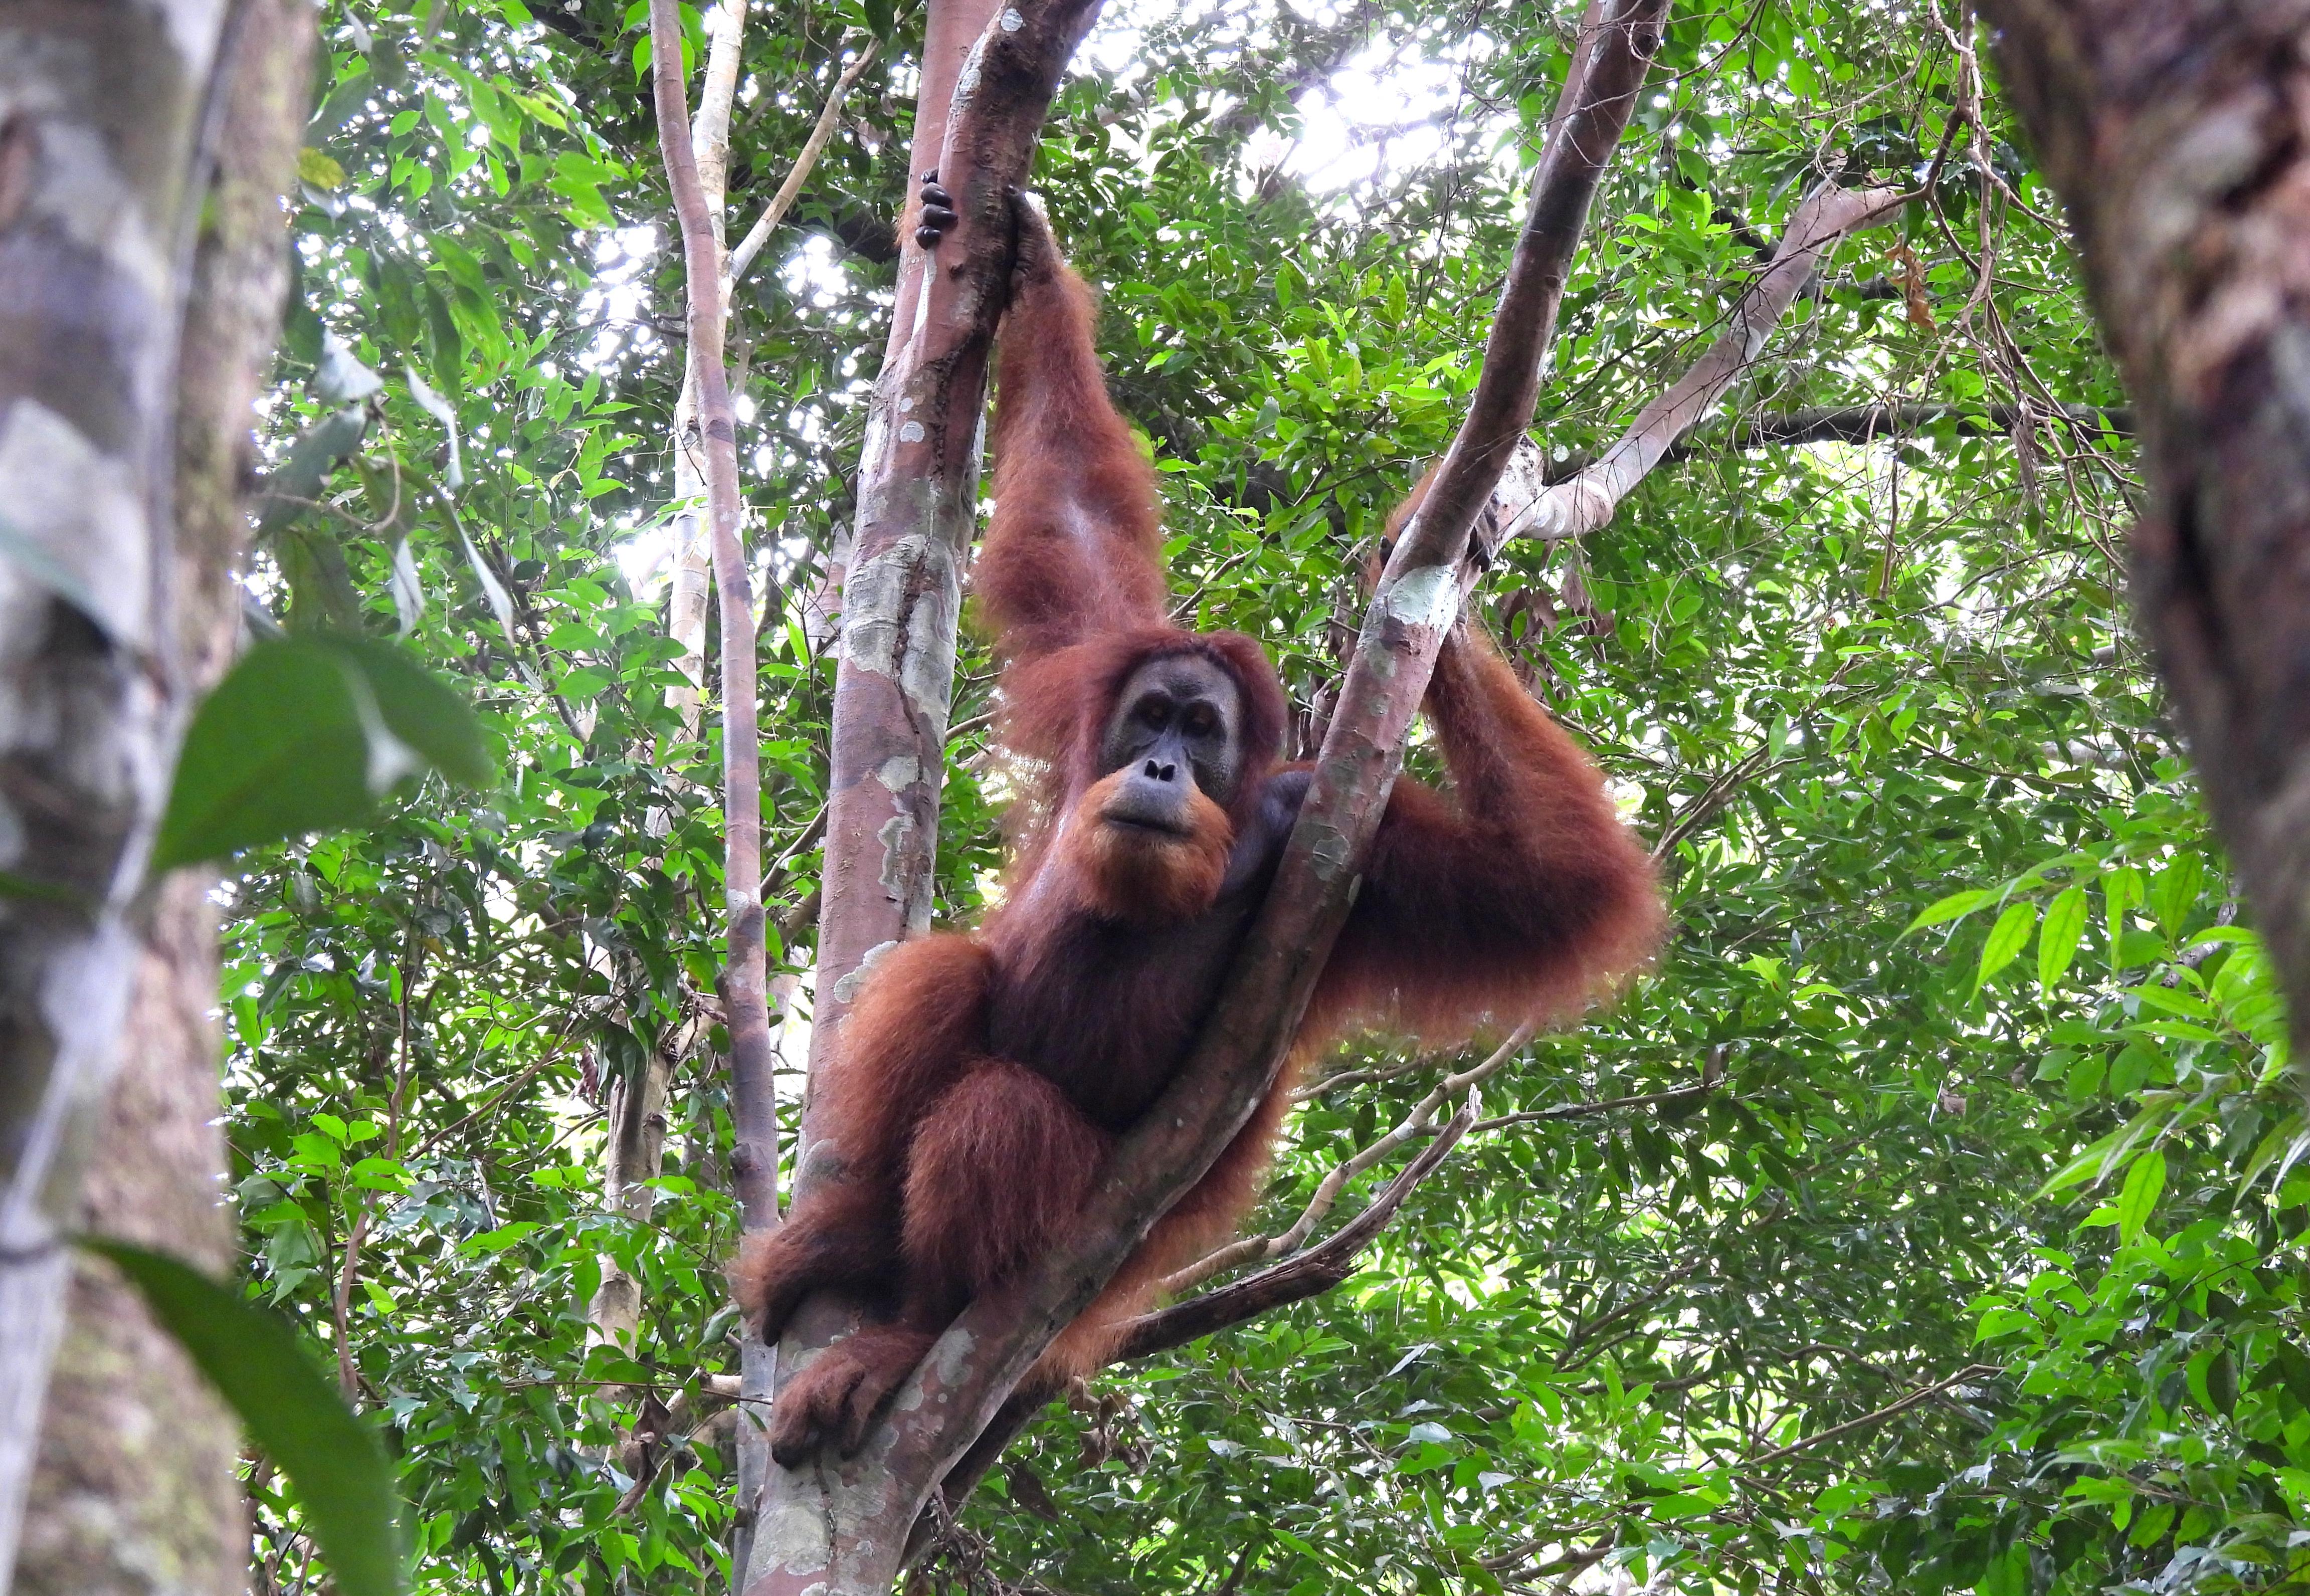 5 days in the jungle - Orangutan Trekking Tours